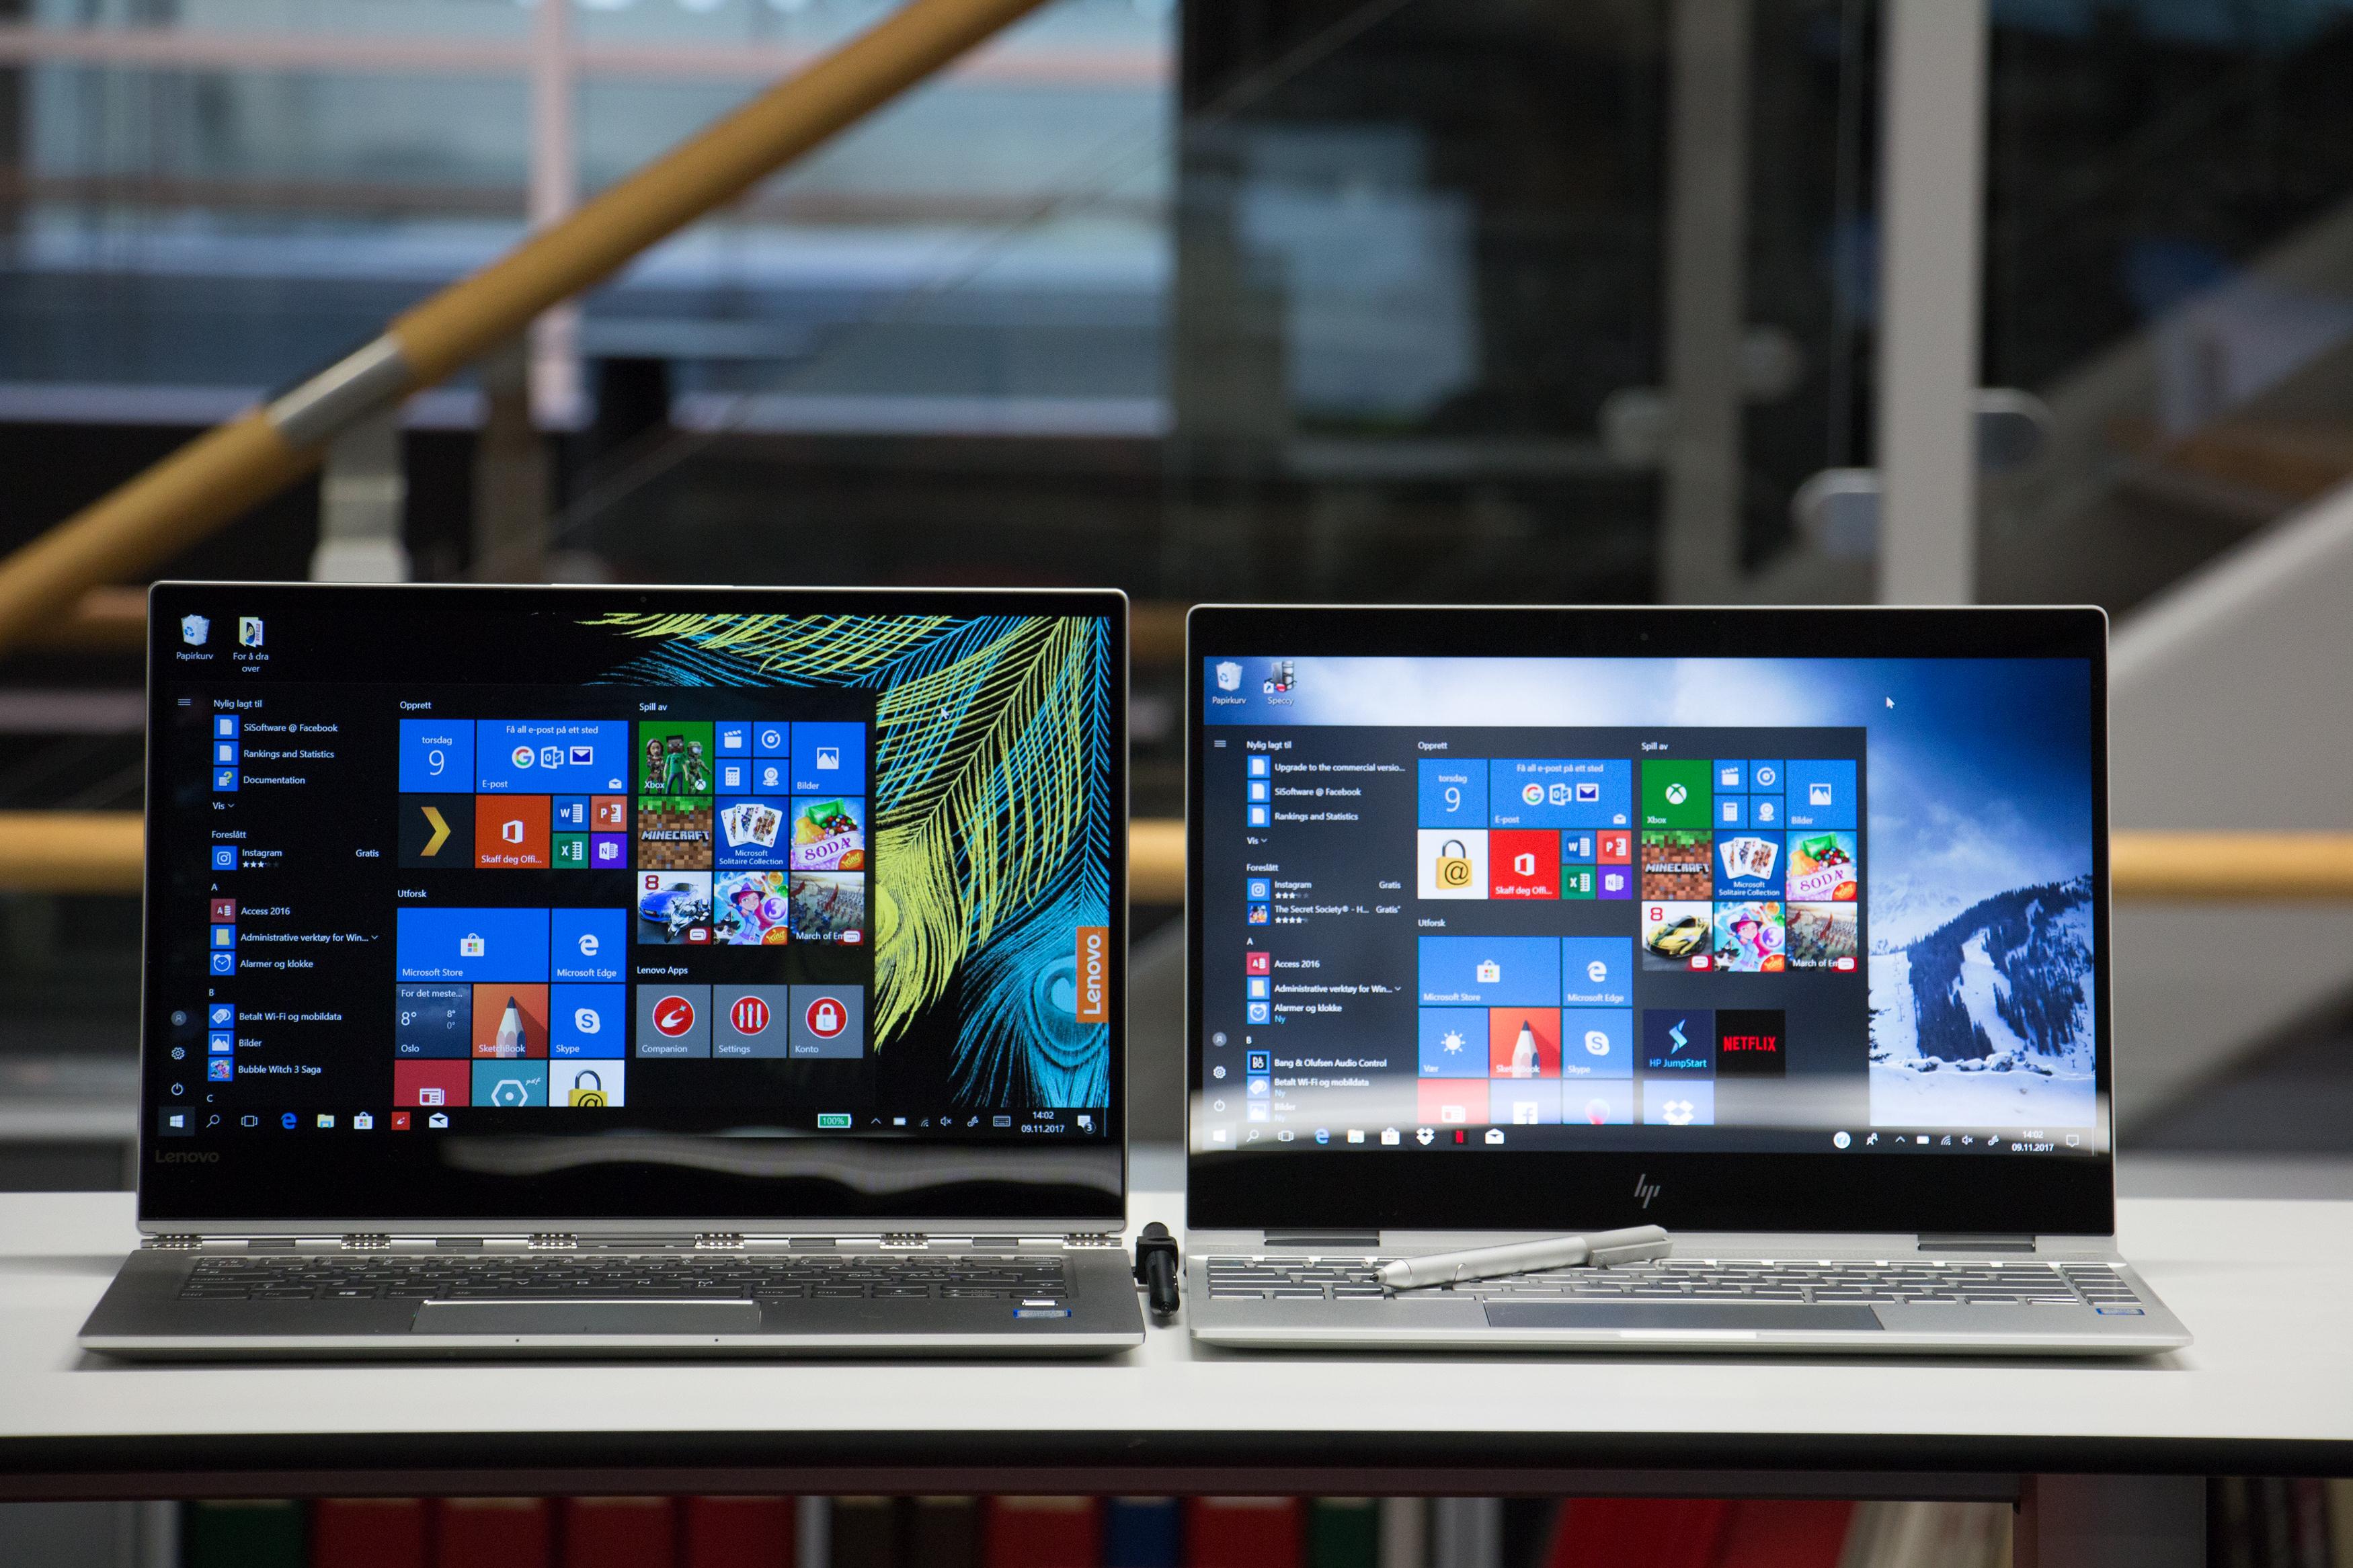 Yoga 920 (til venstre) har en hakket større skjerm enn Spectre x360, som på sin side er lettere og mer kompakt.